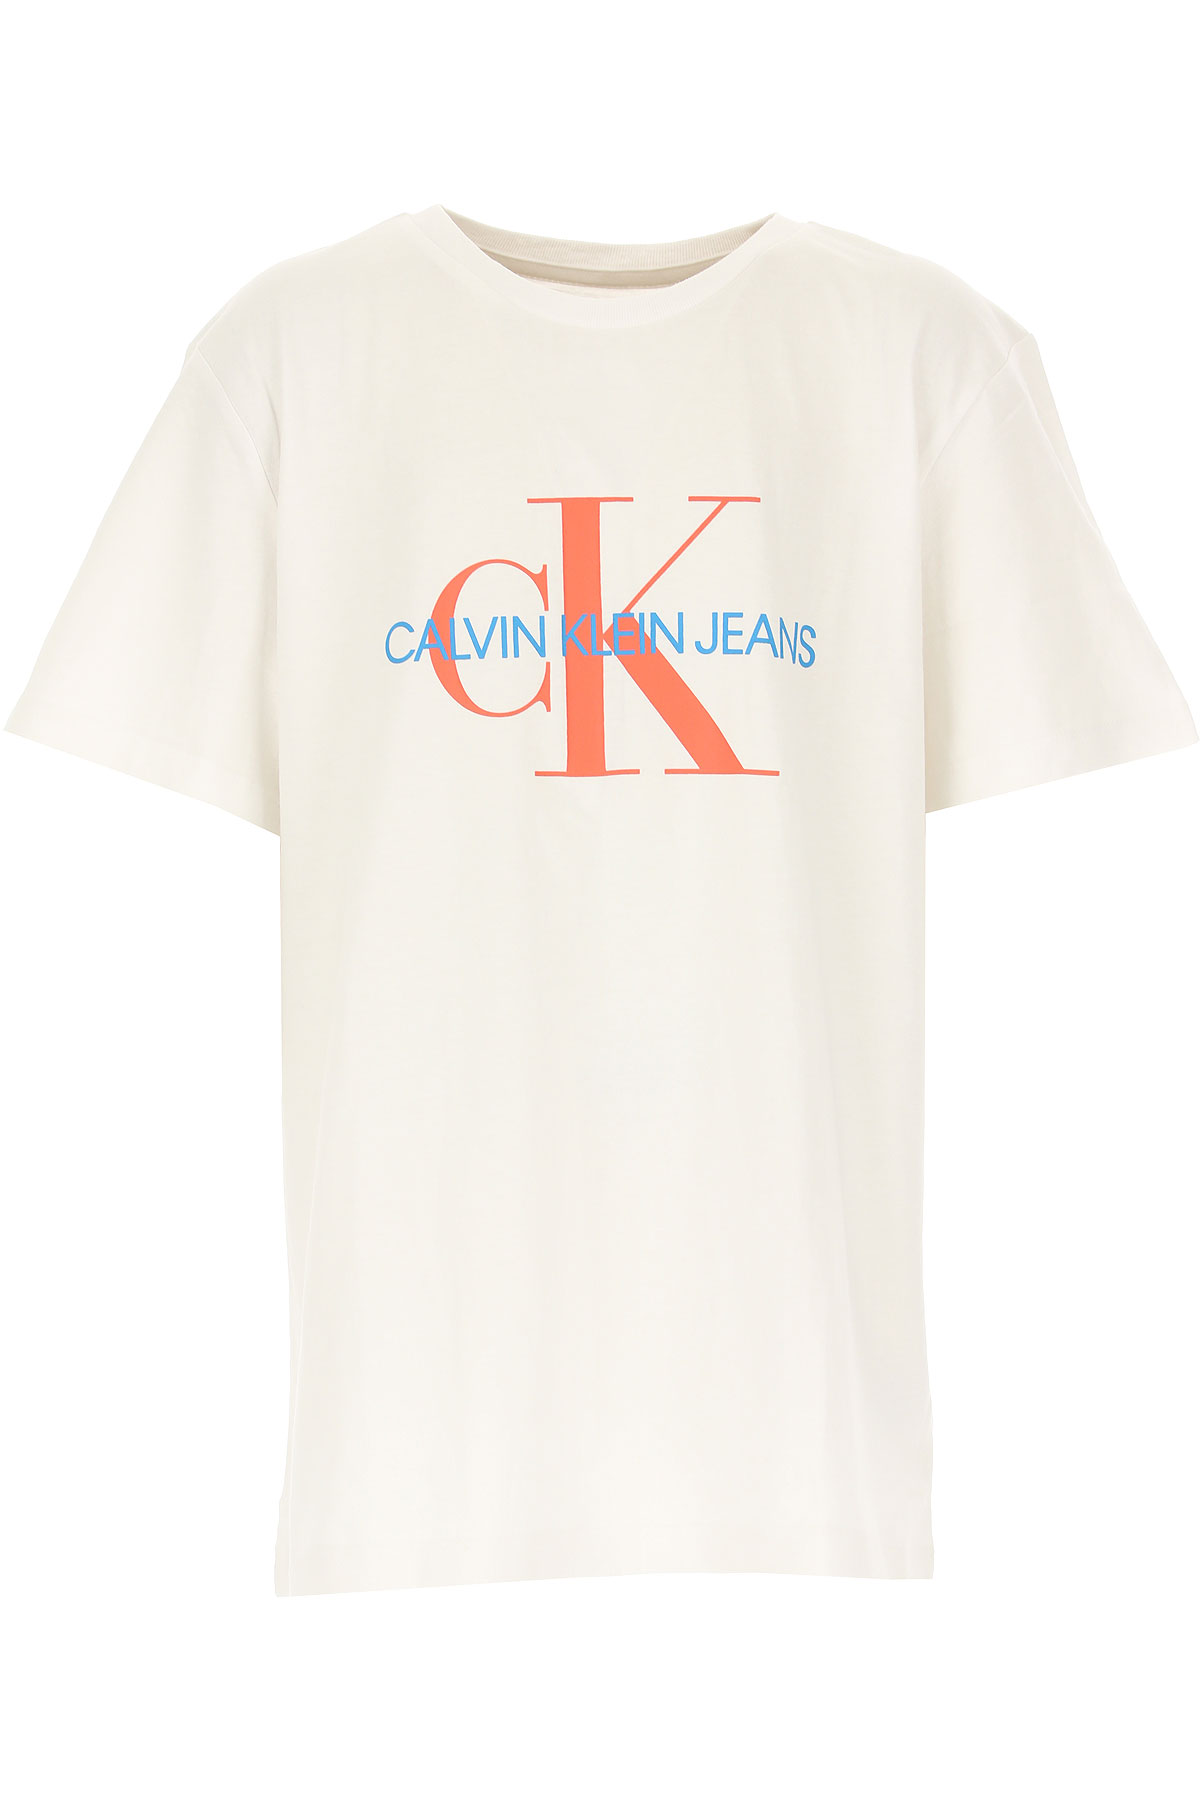 Calvin Klein Kinder T-Shirt für Jungen Günstig im Sale, Weiss, Baumwolle, 2017, 12Y 14Y 16Y